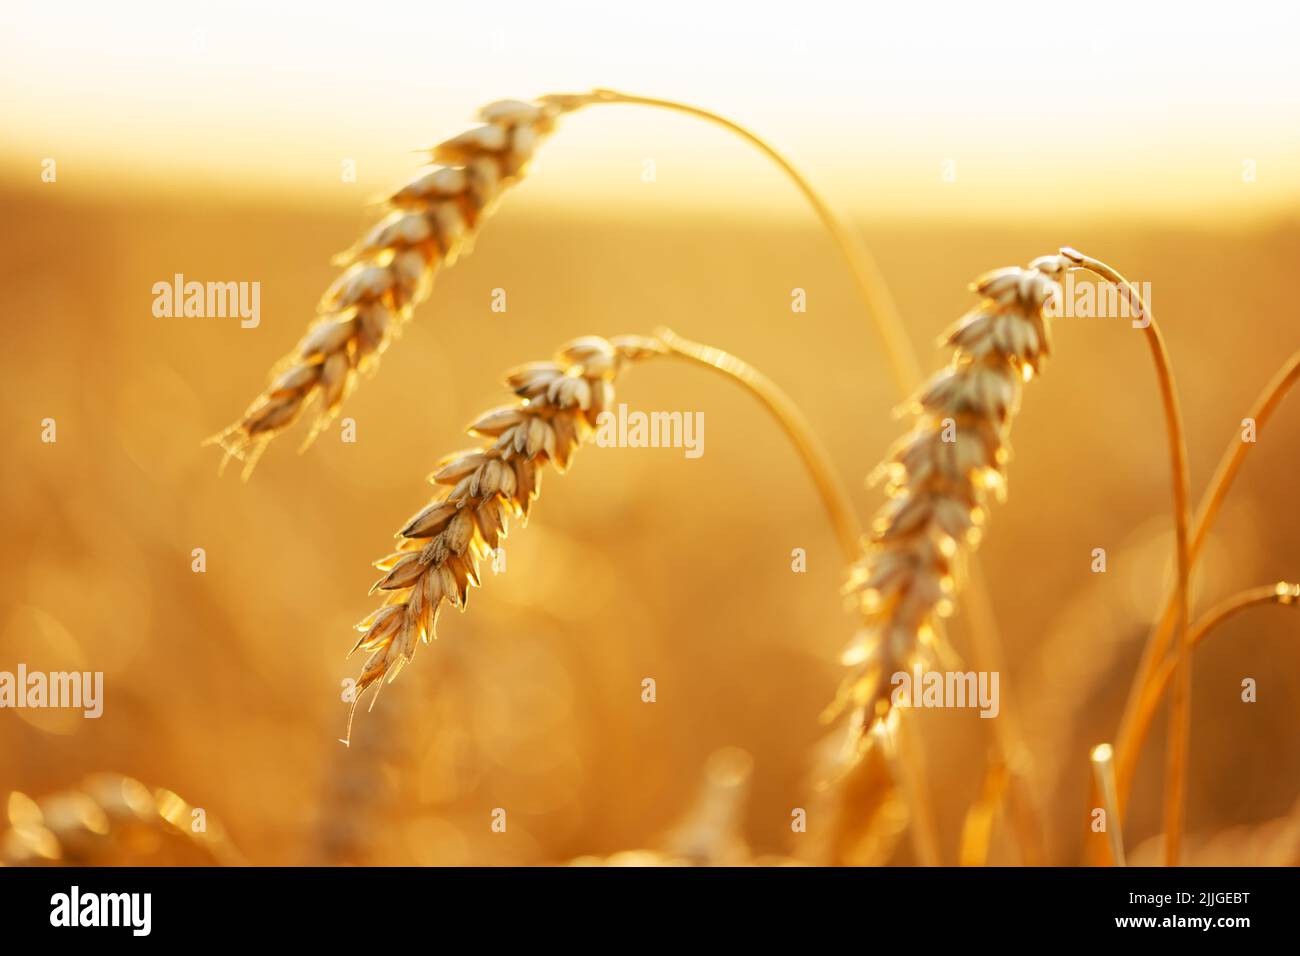 Reife Weizenspikelets auf goldenem Feld, die durch das orangefarbene Abendlicht leuchten. Industrie- und Naturhintergrund. Ukraine, Europa Stockfoto